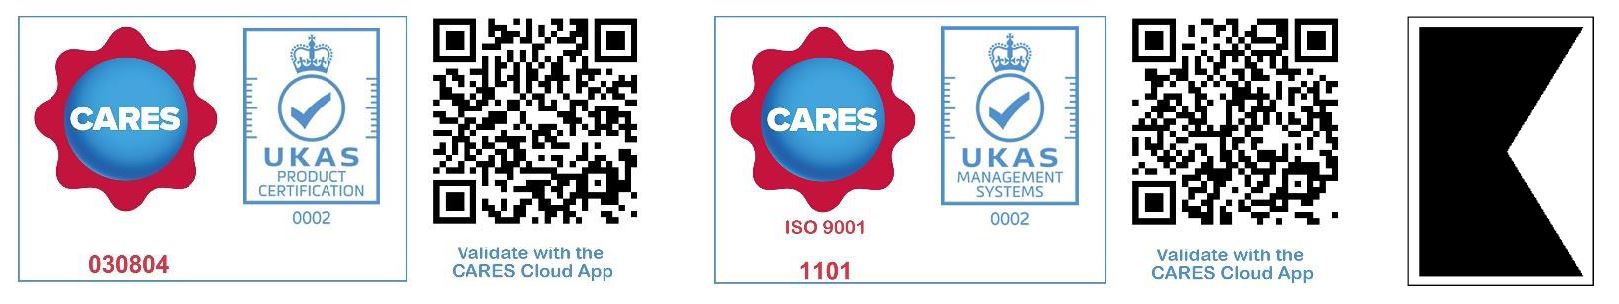 UK Cares BS6744 produktcertificering